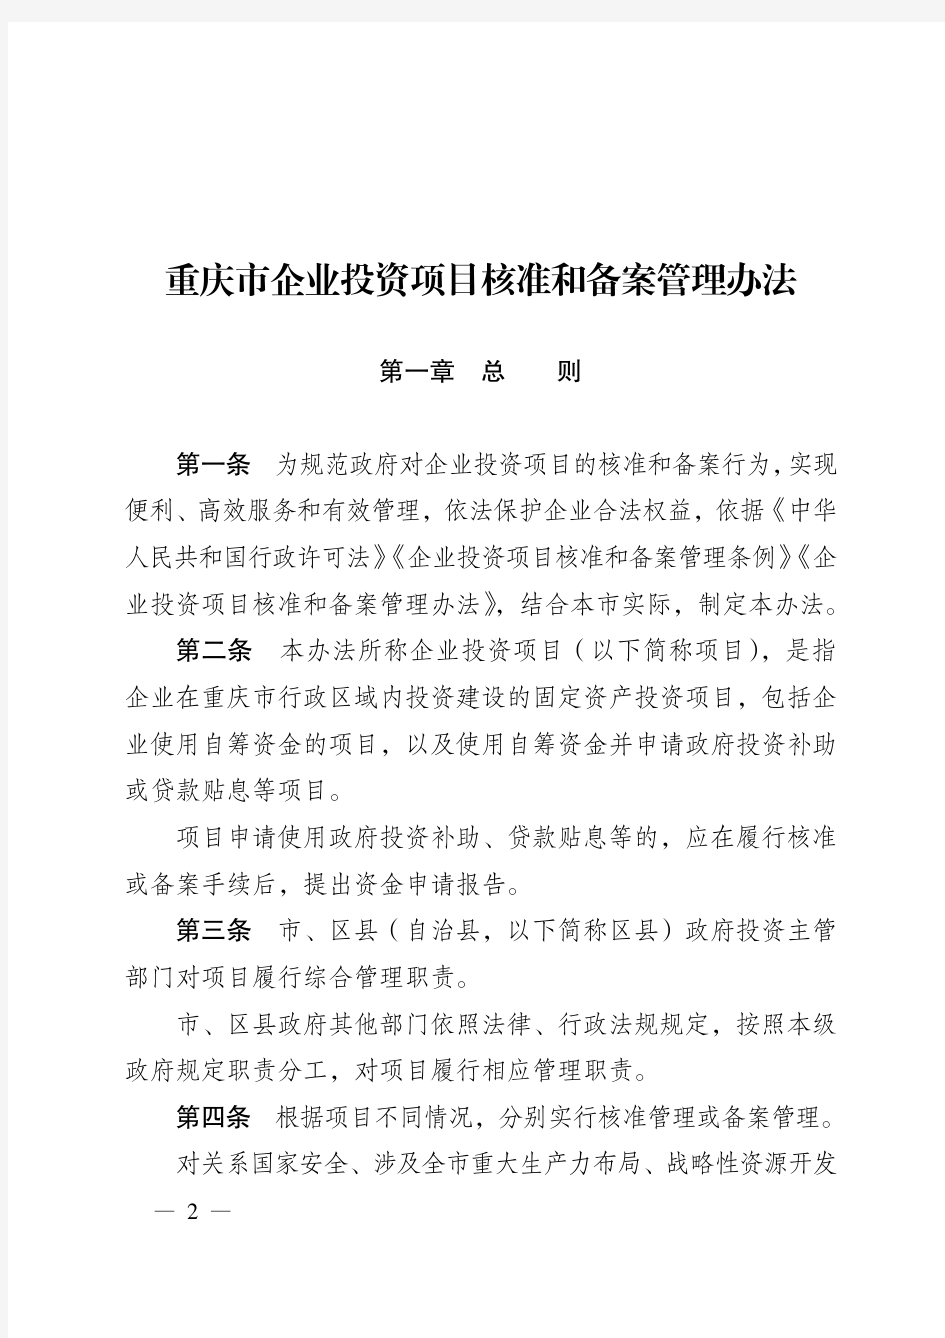 《重庆市企业投资项目核准和备案管理办法(2017年本)》(渝府发〔2017〕31 号)